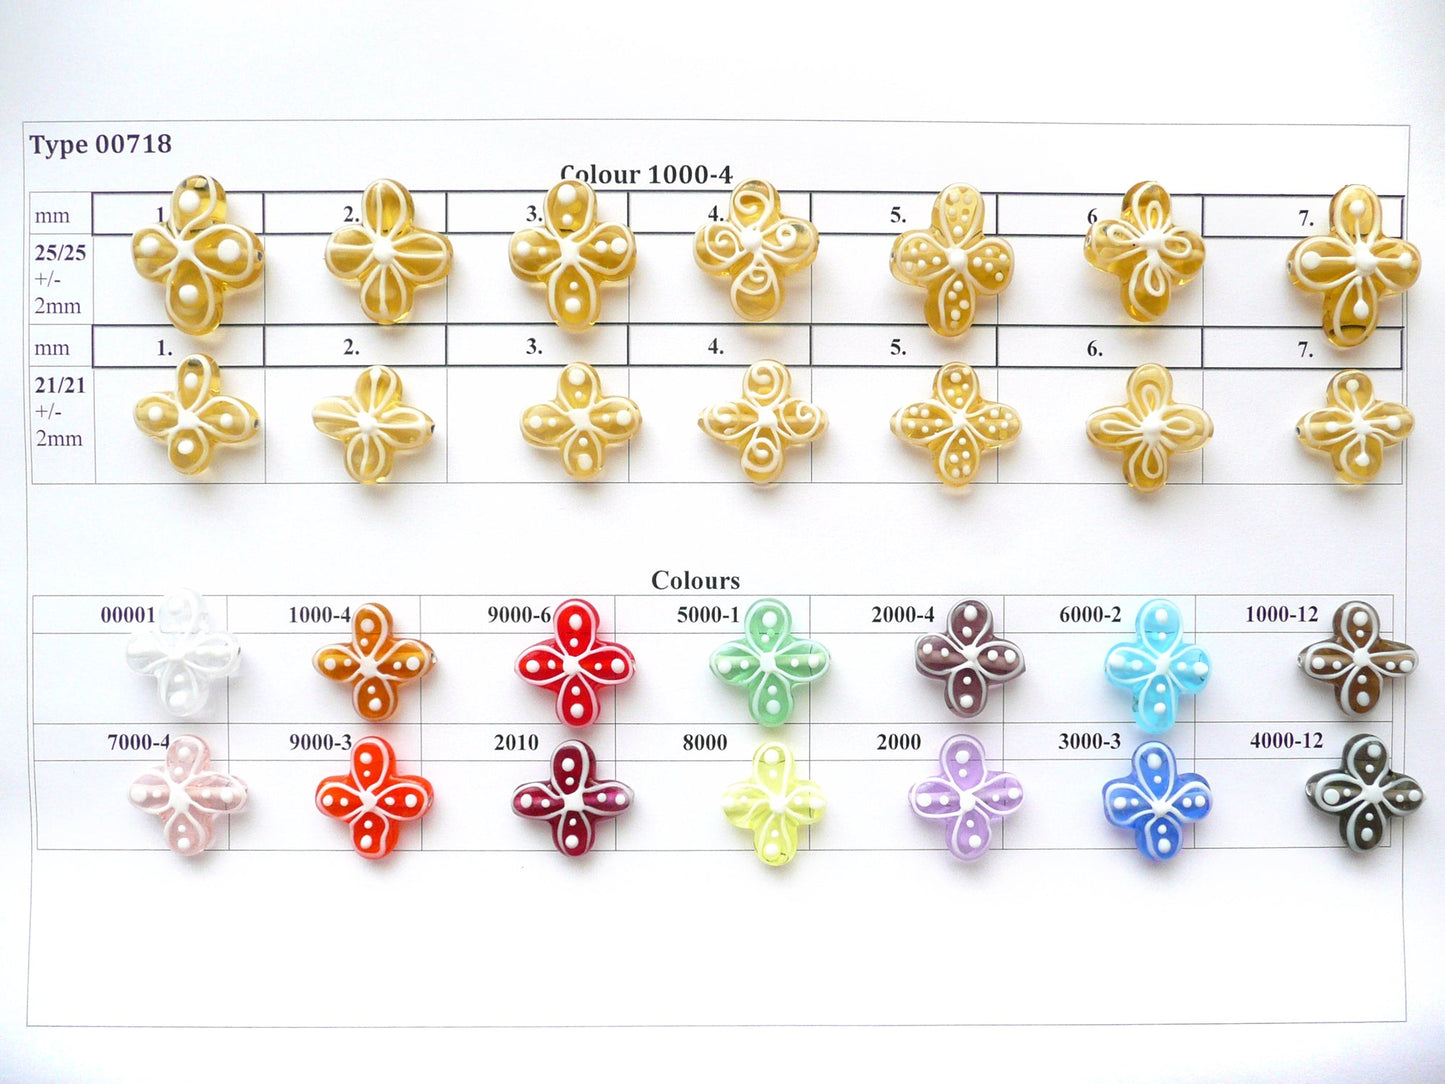 30 pcs Flower Lampwork Beads 718 / Design 2, Handmade, Preciosa Glass, Czech Republic